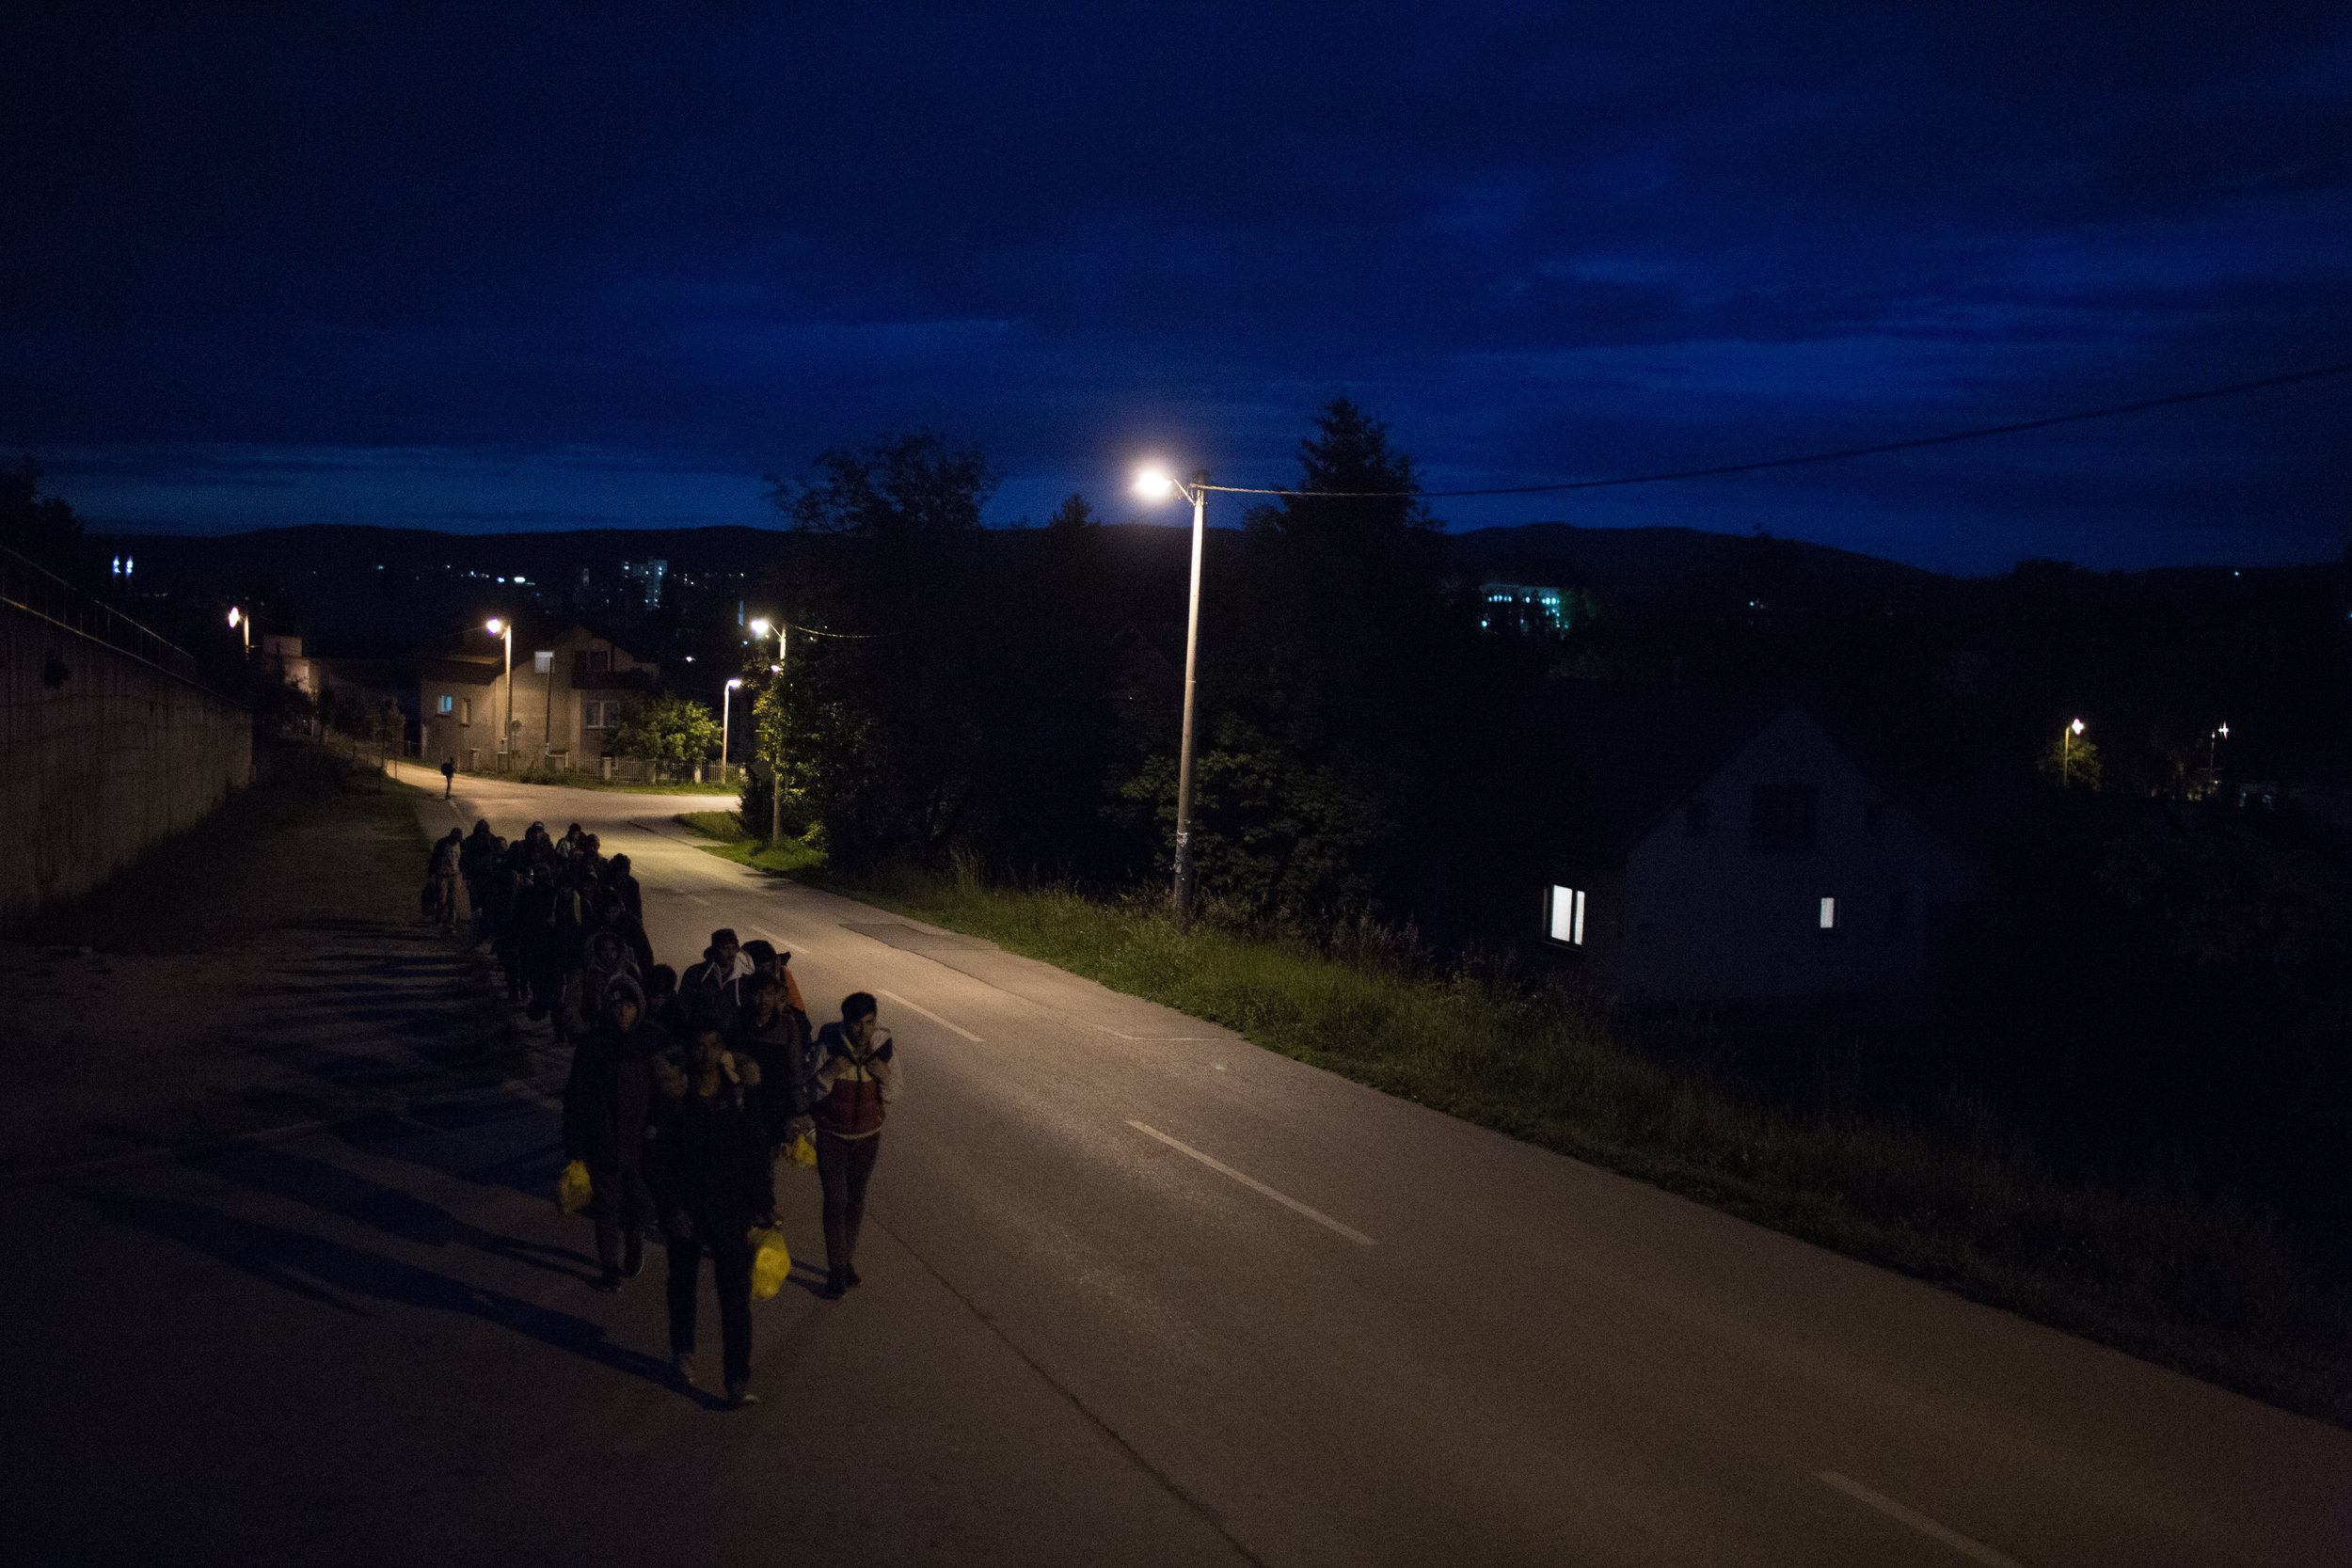  Skupina prebežnikov na nočnem pohodu pri kraju Zavalje v BiH proti Hrvaški. Večinoma si v izogib srečanjem s policisti in prebivalci izberejo manj obljudene ceste in kraje. Noč jim daje zavetje pred nezaželenimi pogledi. 